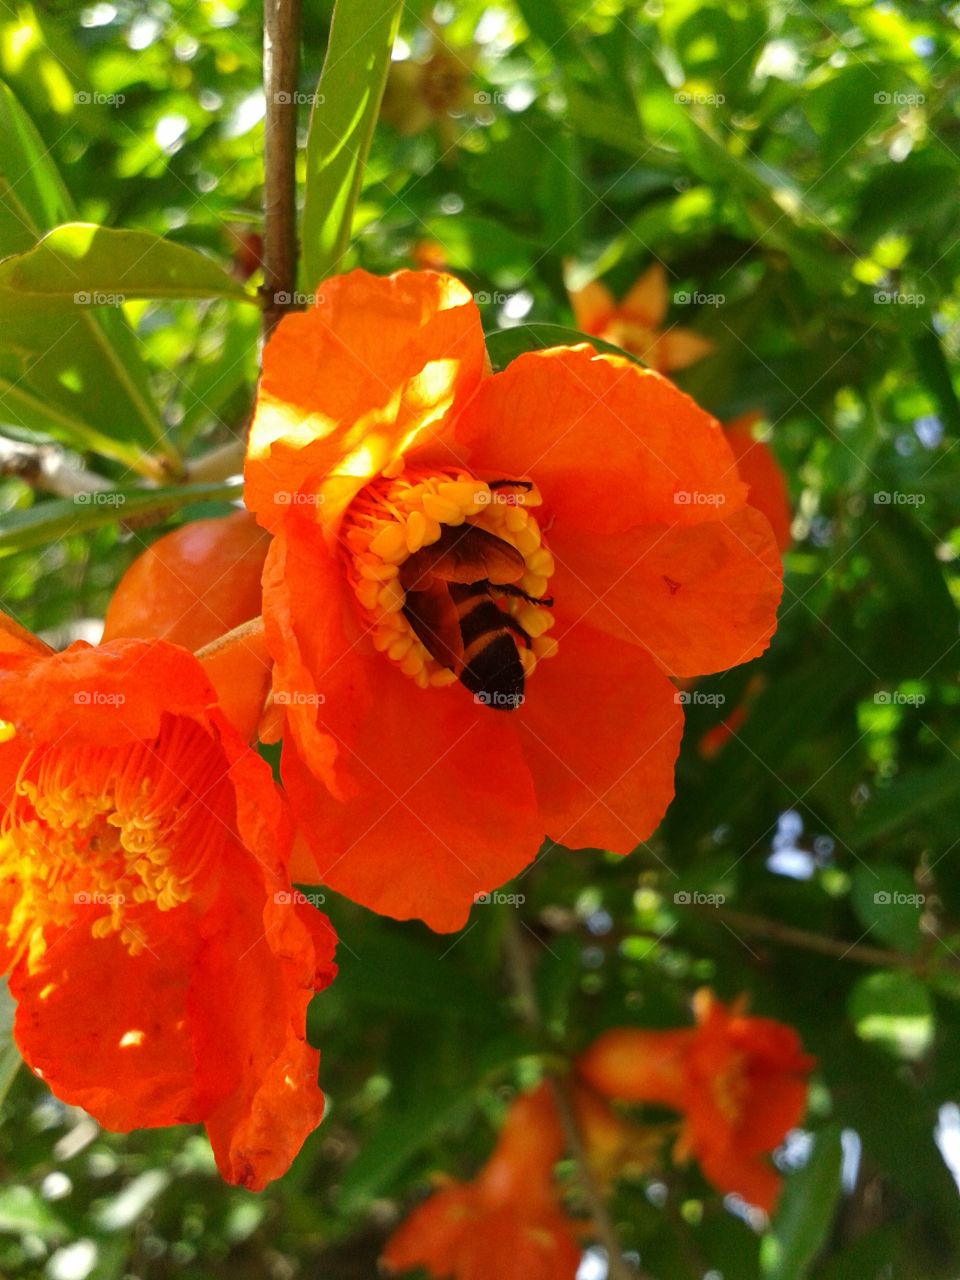 honeybee in flowers